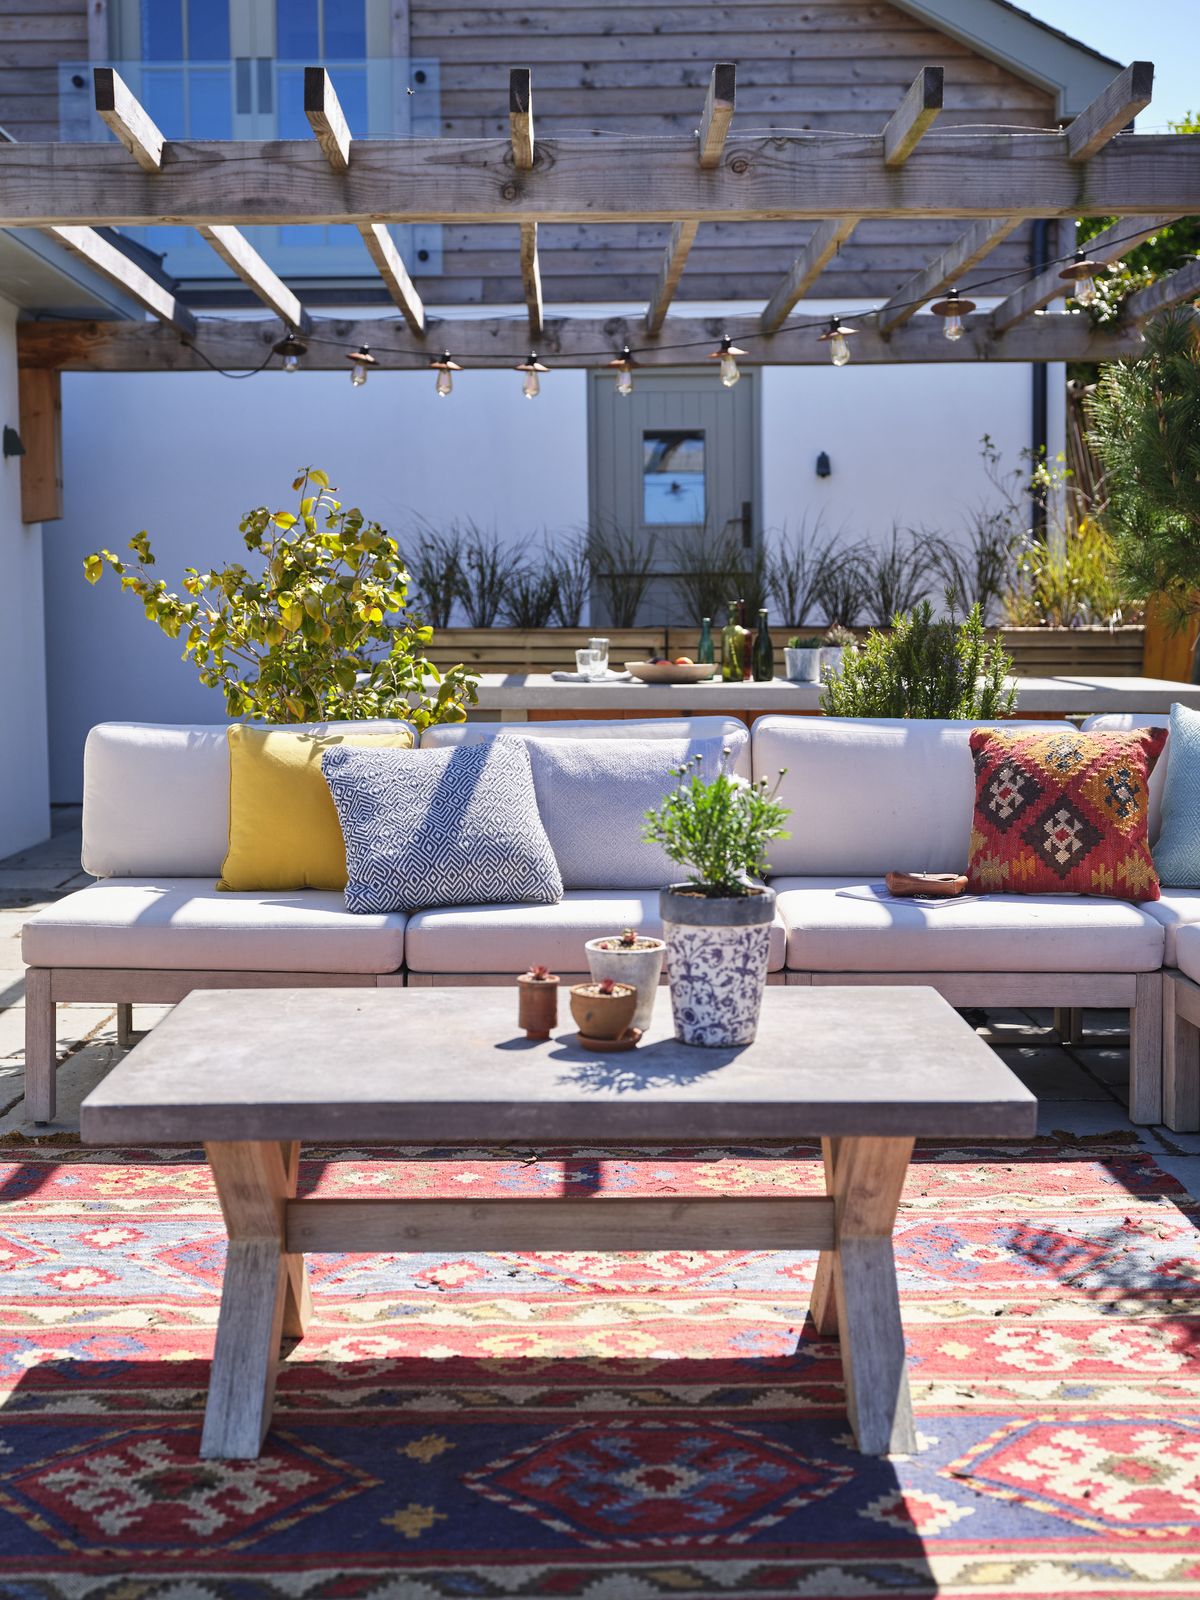 Brilliant pergola ideas to improve your garden this spring | Homebuilding